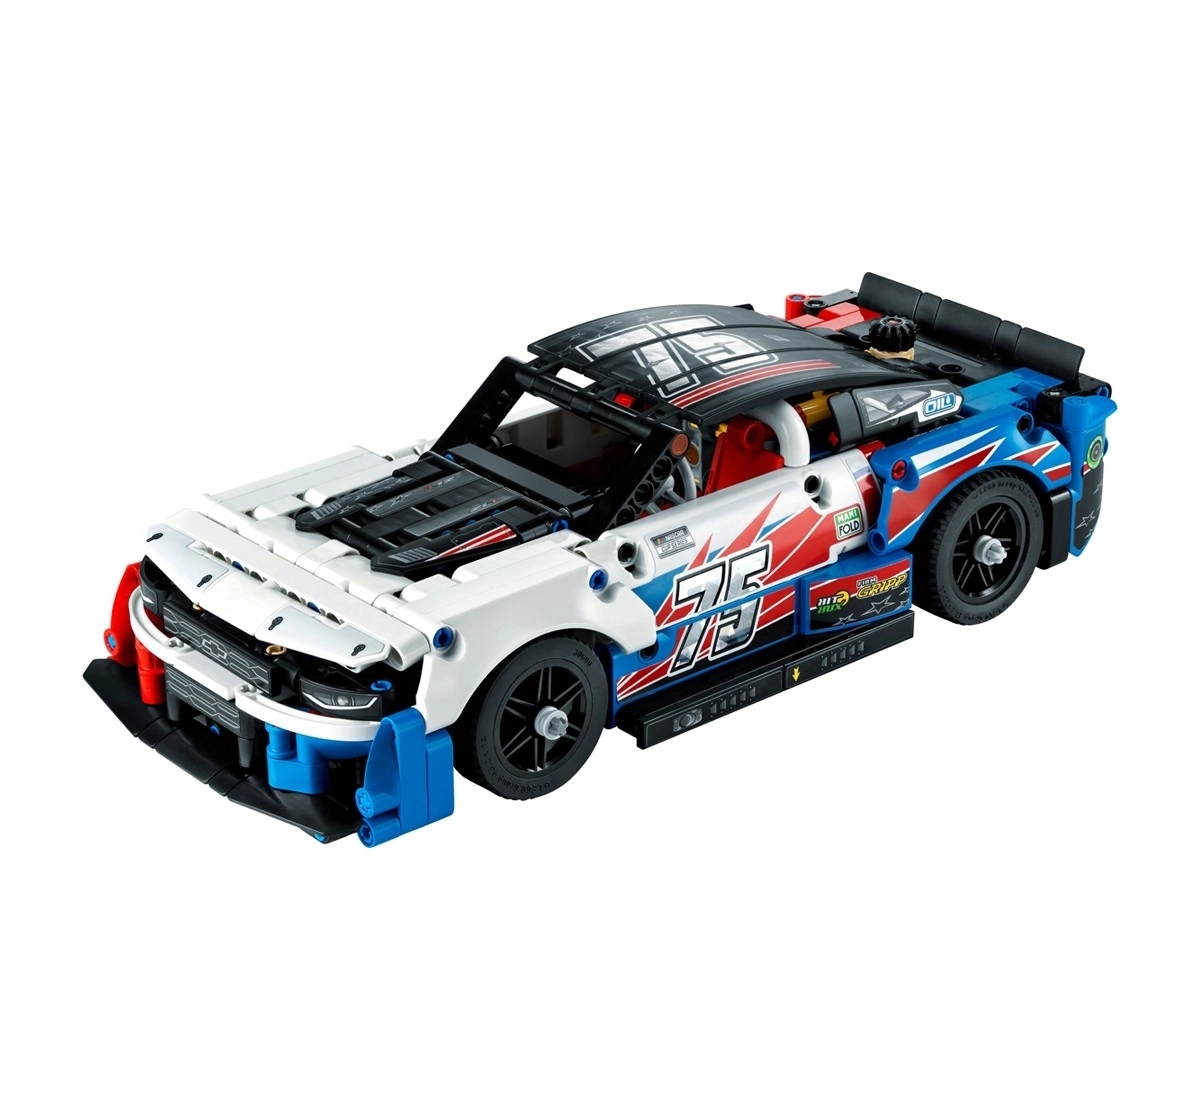 LEGO Technic NASCAR Next Gen Chevrolet Camaro ZL1 42153 Building Toy Set 672 Pieces Multicolour 9Y+